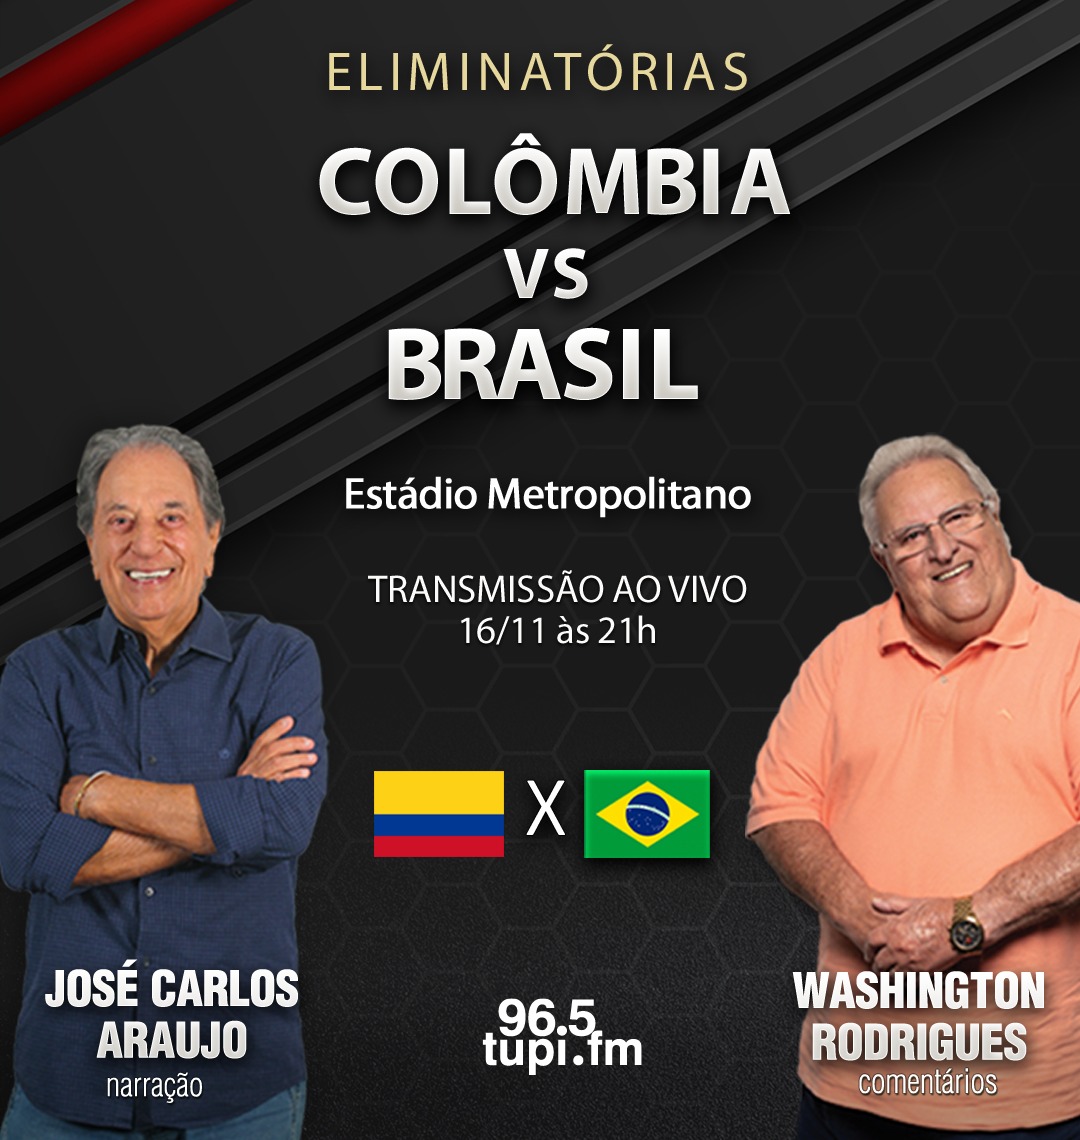 COLÔMBIA X BRASIL AO VIVO, pela ELIMINATÓRIA DA COPA DO MUNDO 2026